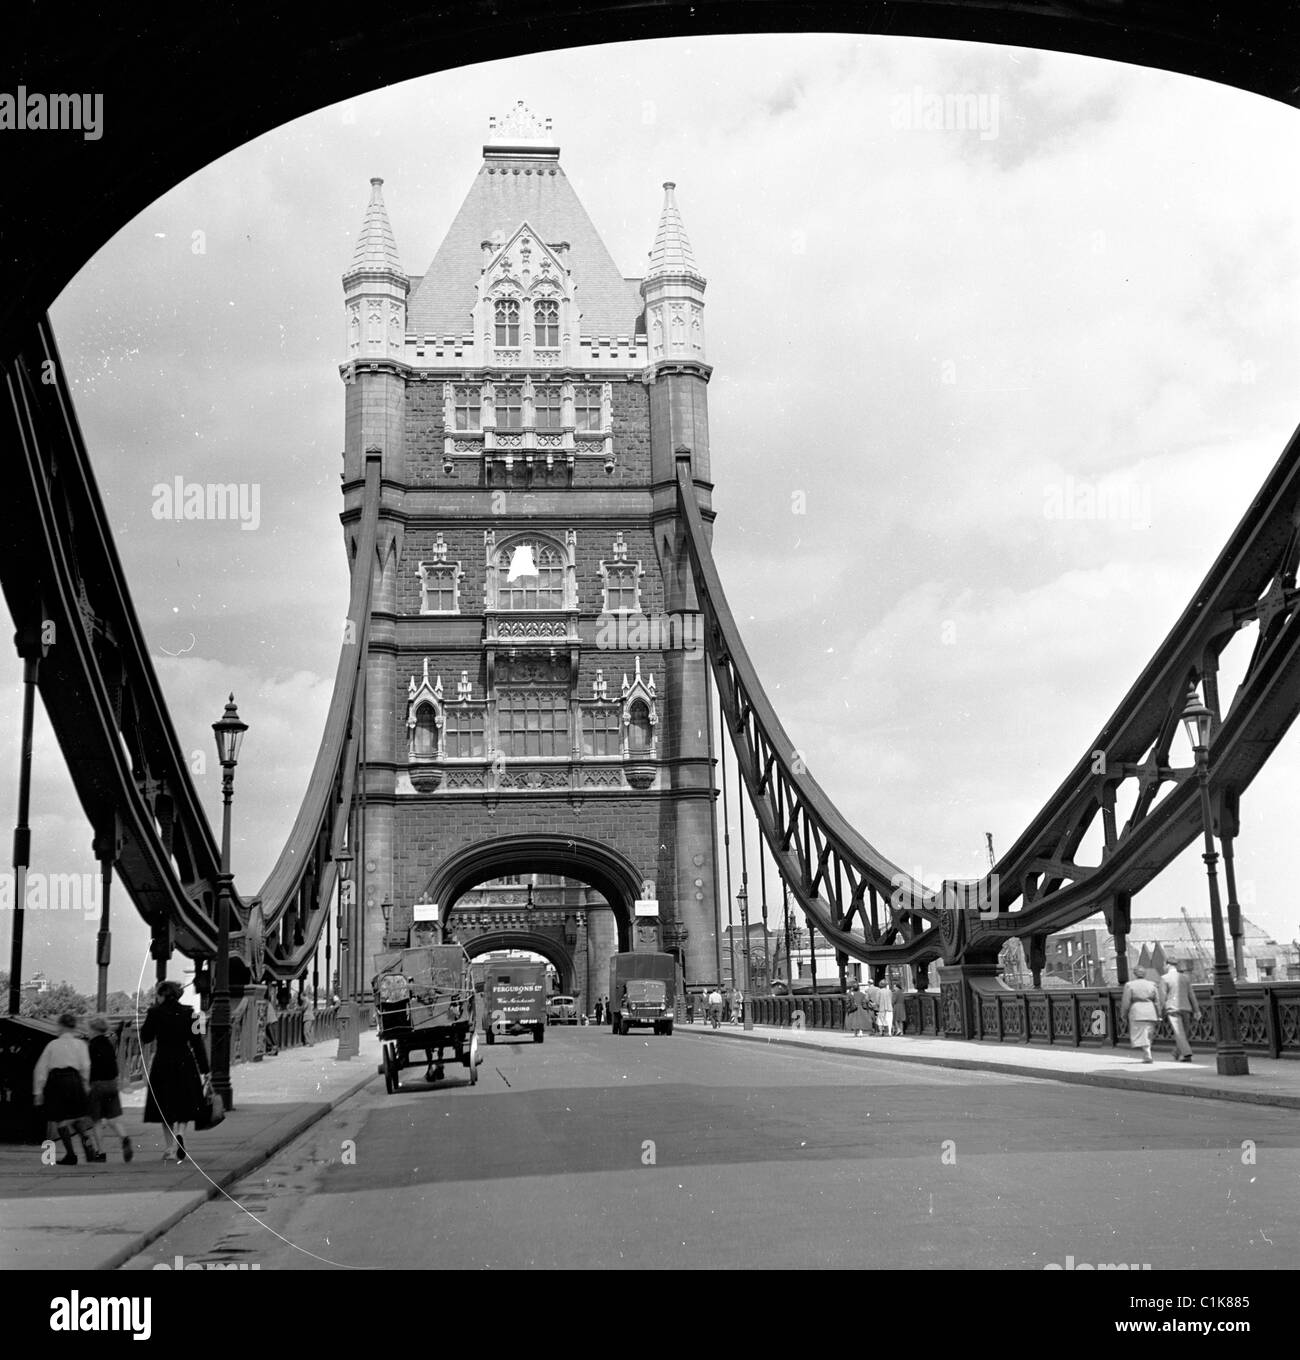 Années 1950, historique, un cheval et une charrette et de petits camions sur Tower Bridge, un pont bascule et suspendu sur la Tamise, près de la Tour de Londres. Banque D'Images